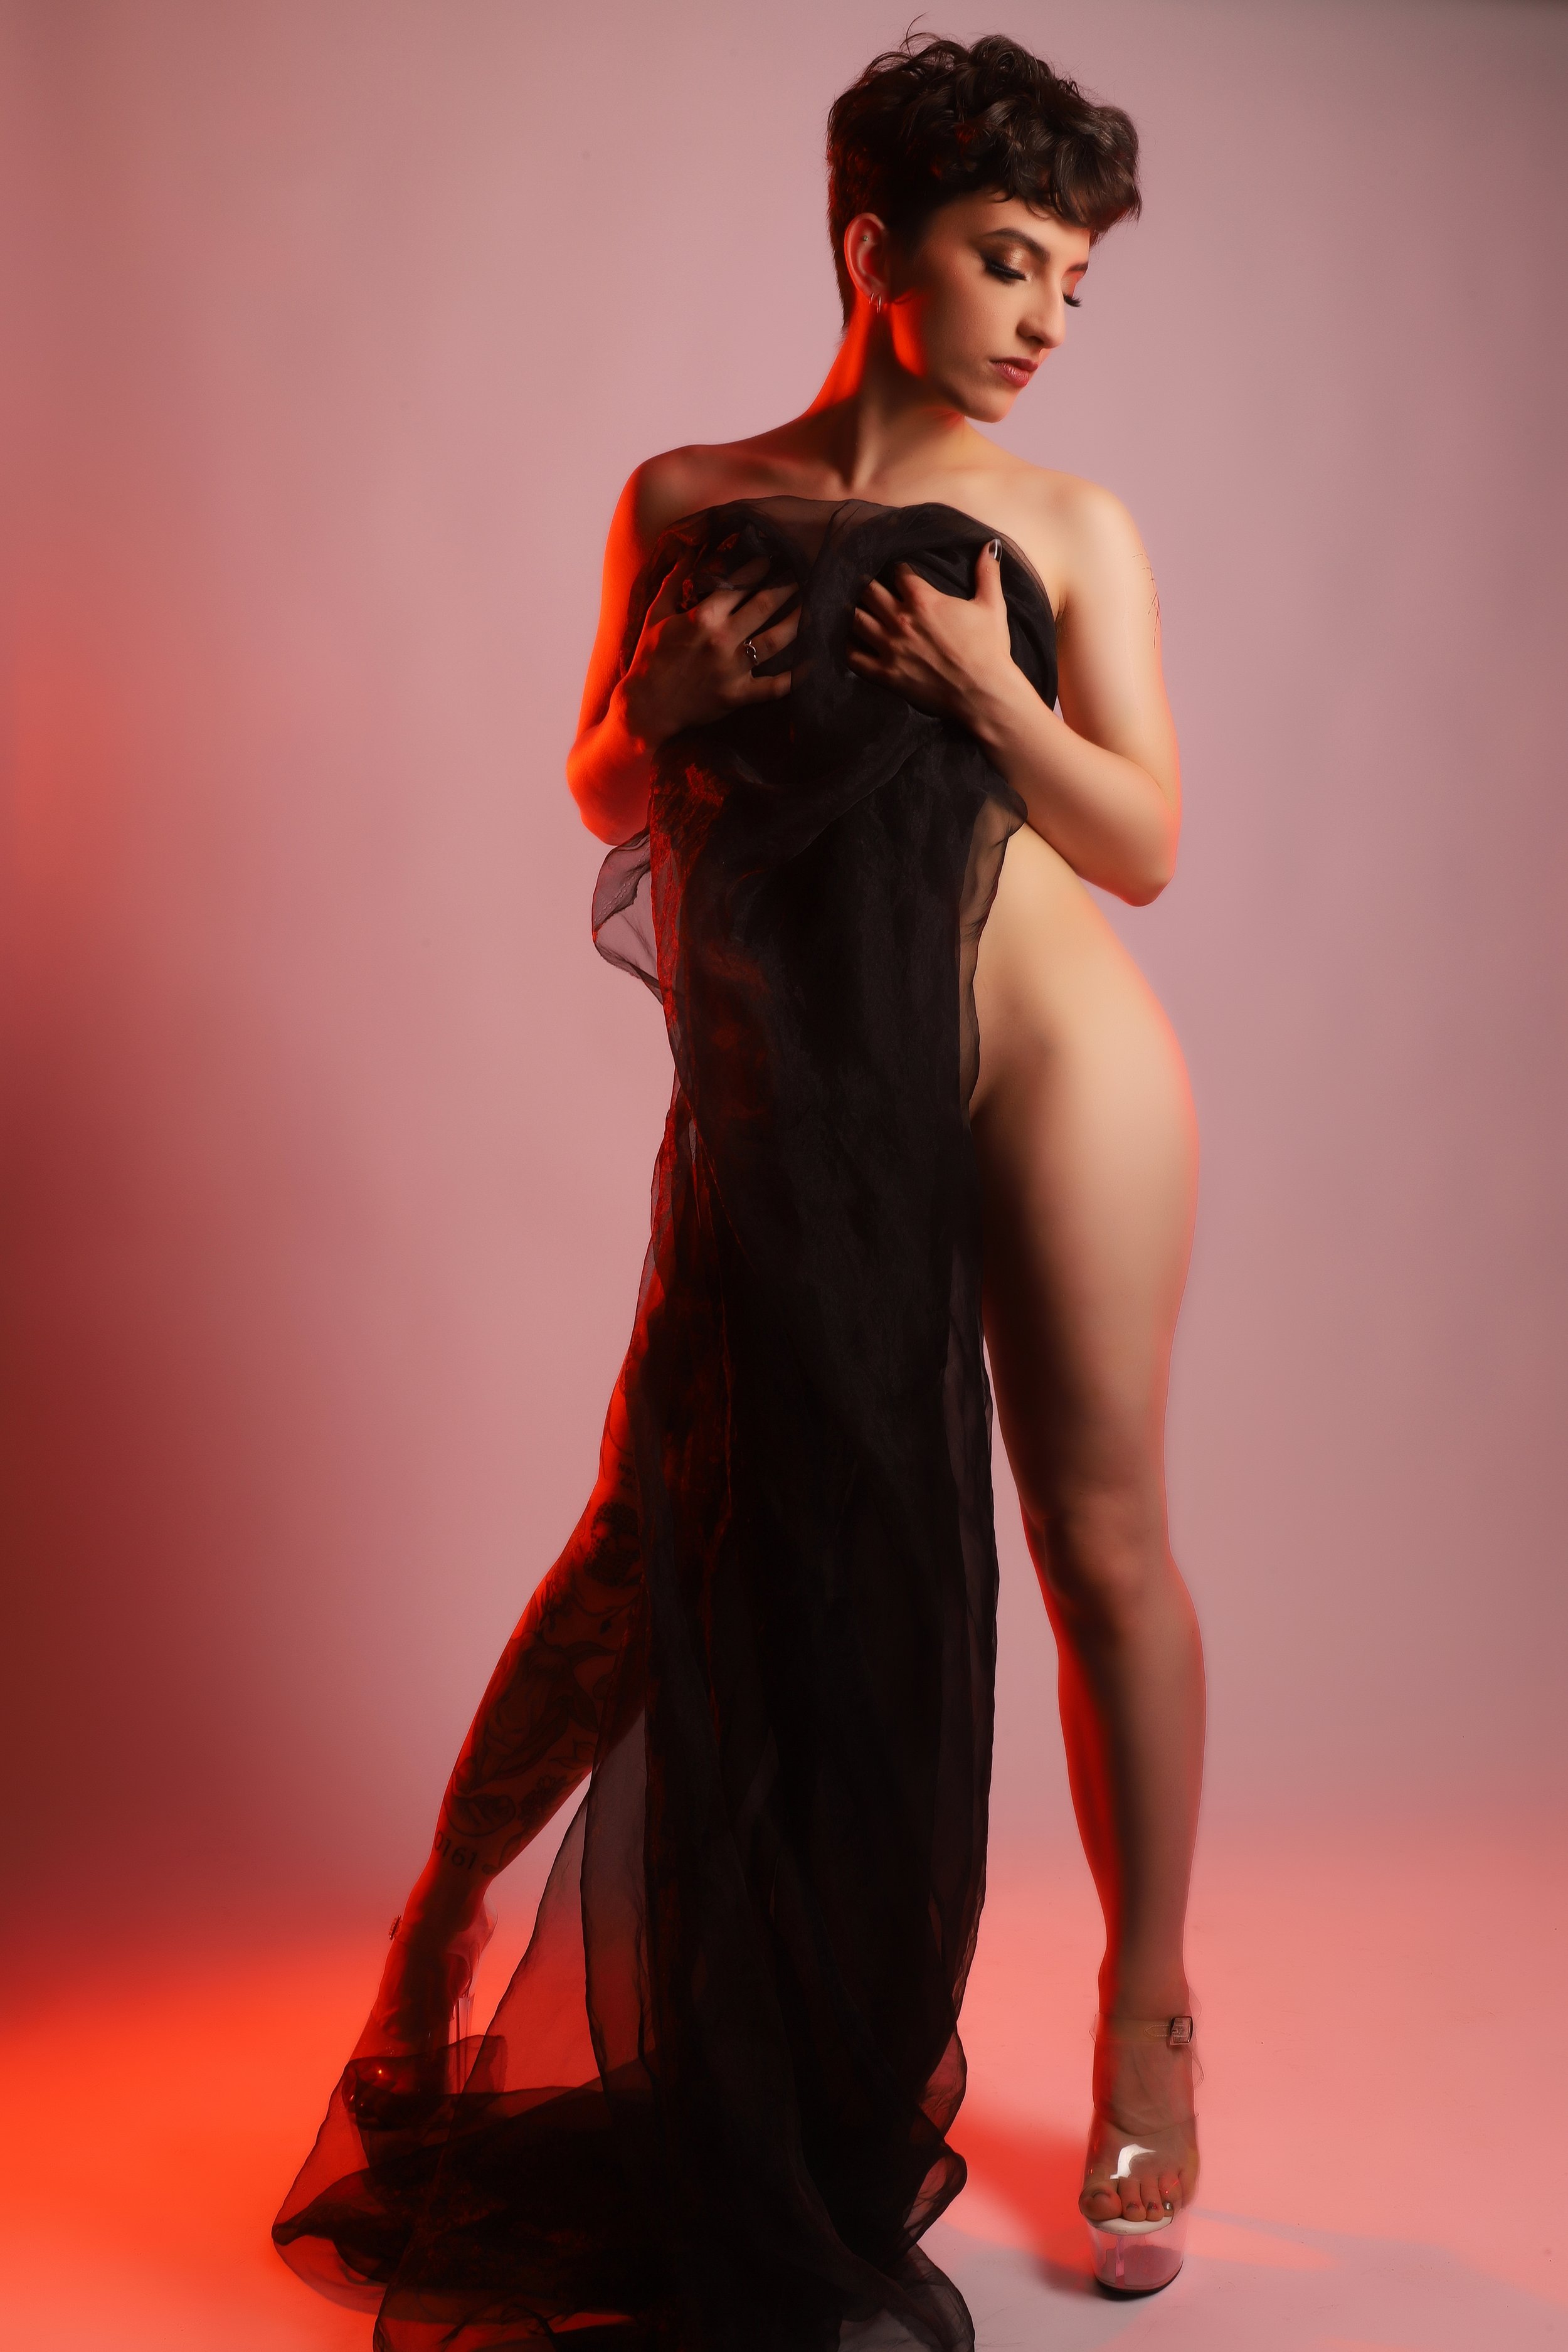 nude boudoir photoshoot curves photography studios altrincham.jpg